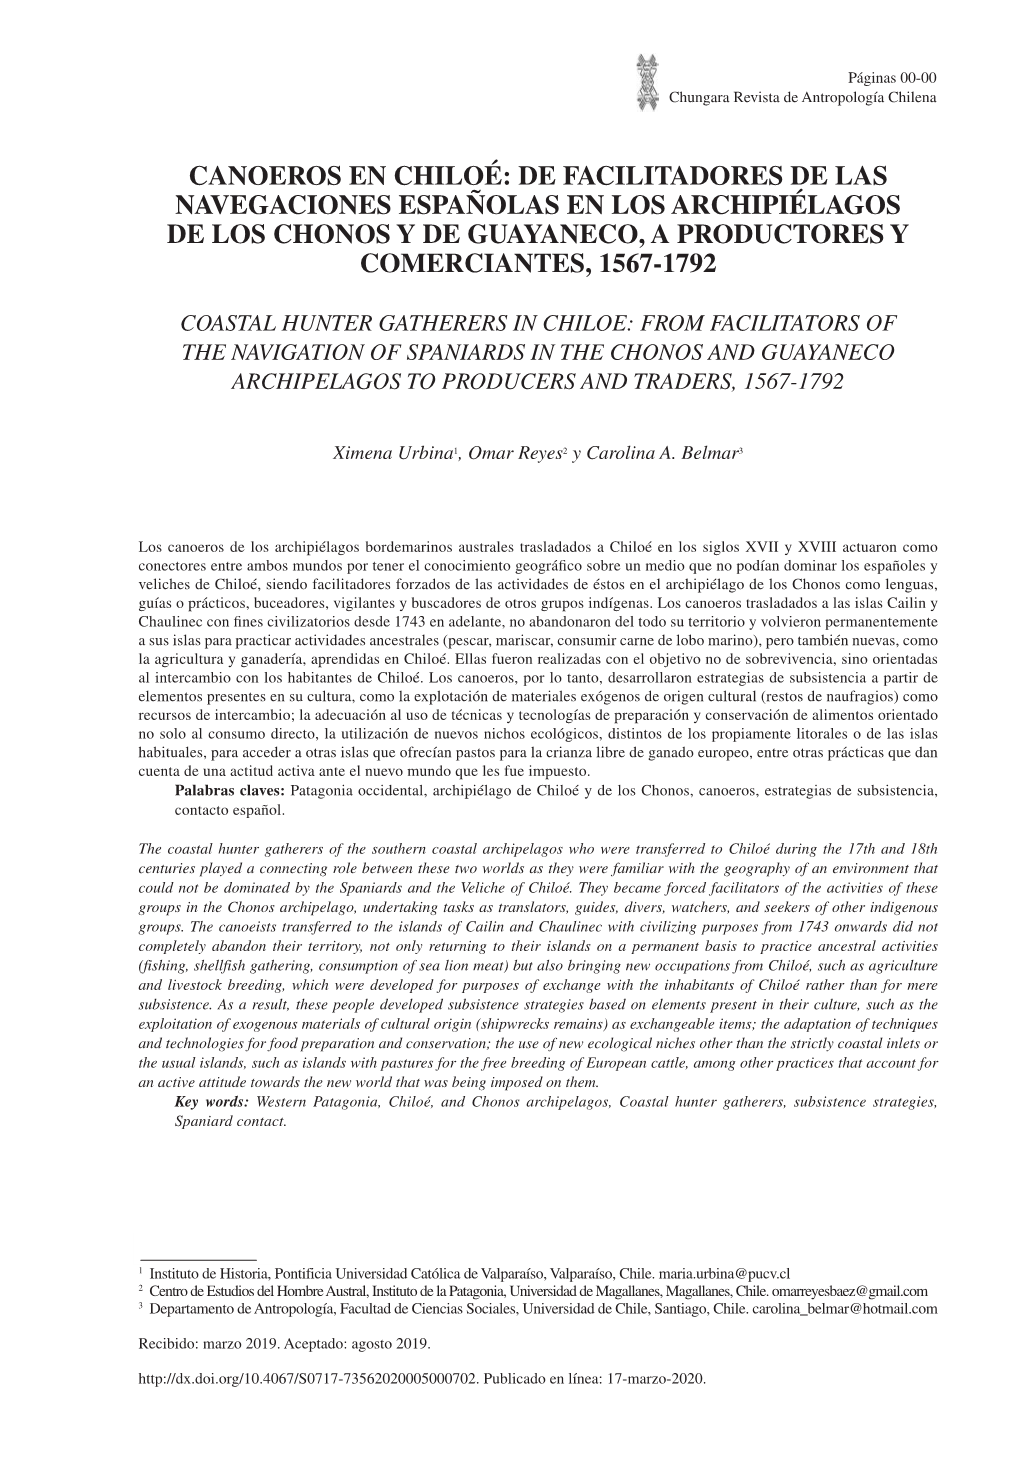 Canoeros En Chiloé: De Facilitadores De Las Navegaciones Españolas En Los Archipiélagos De Los Chonos Y De Guayaneco, a Productores Y Comerciantes, 1567-1792